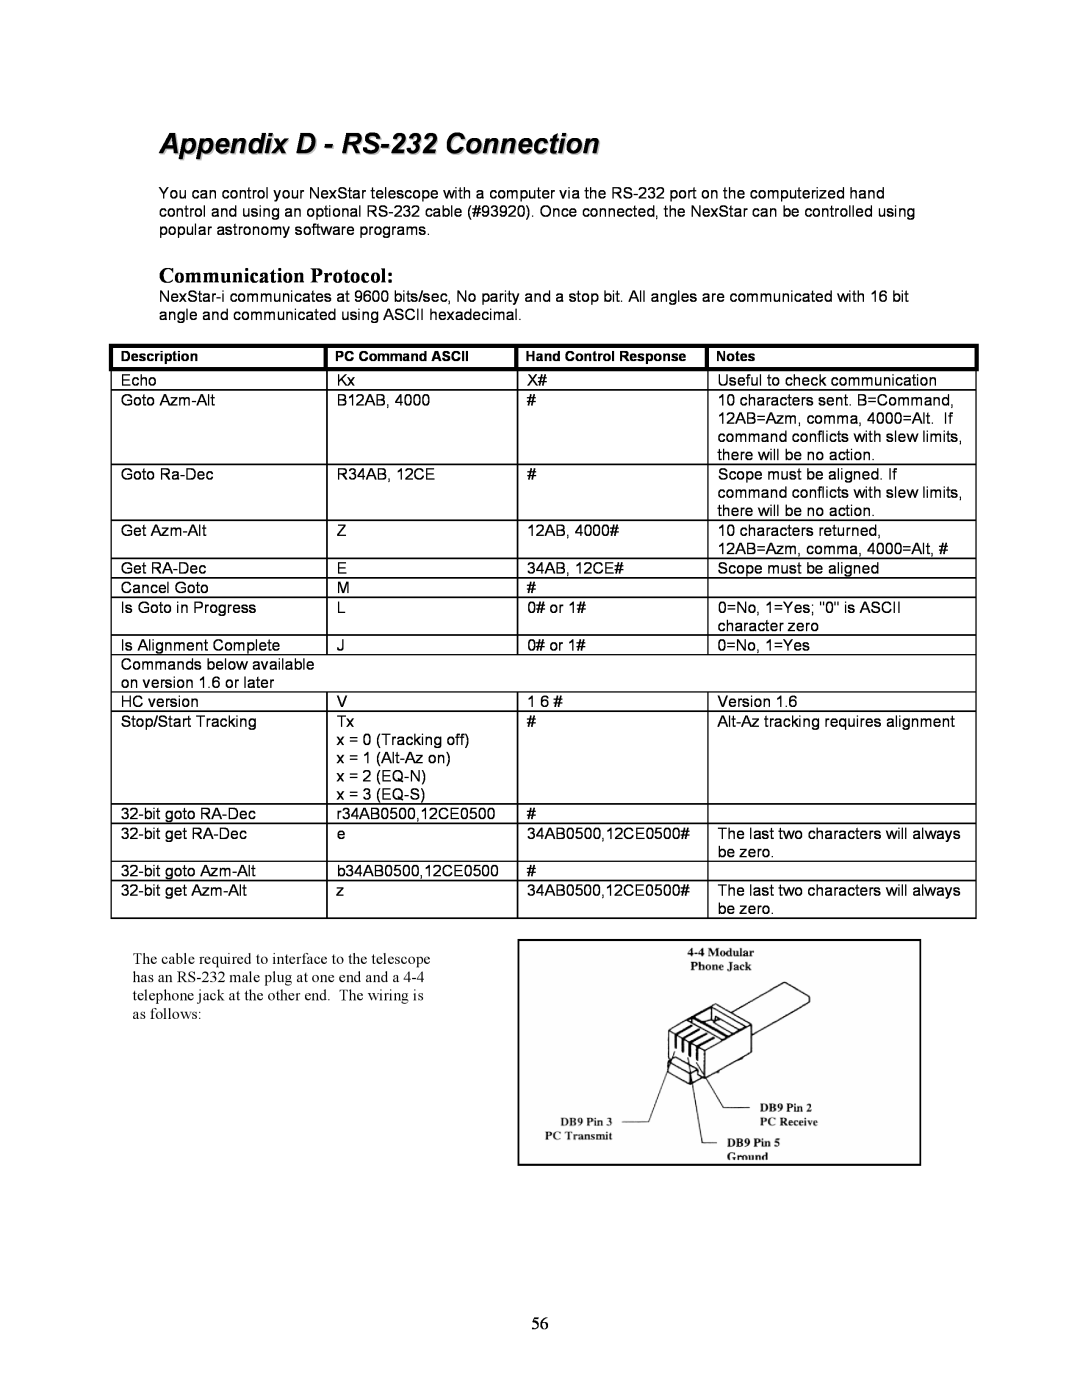 Celestron NexStar 8i manual Appendix D - RS-232 Connection, Communication Protocol 